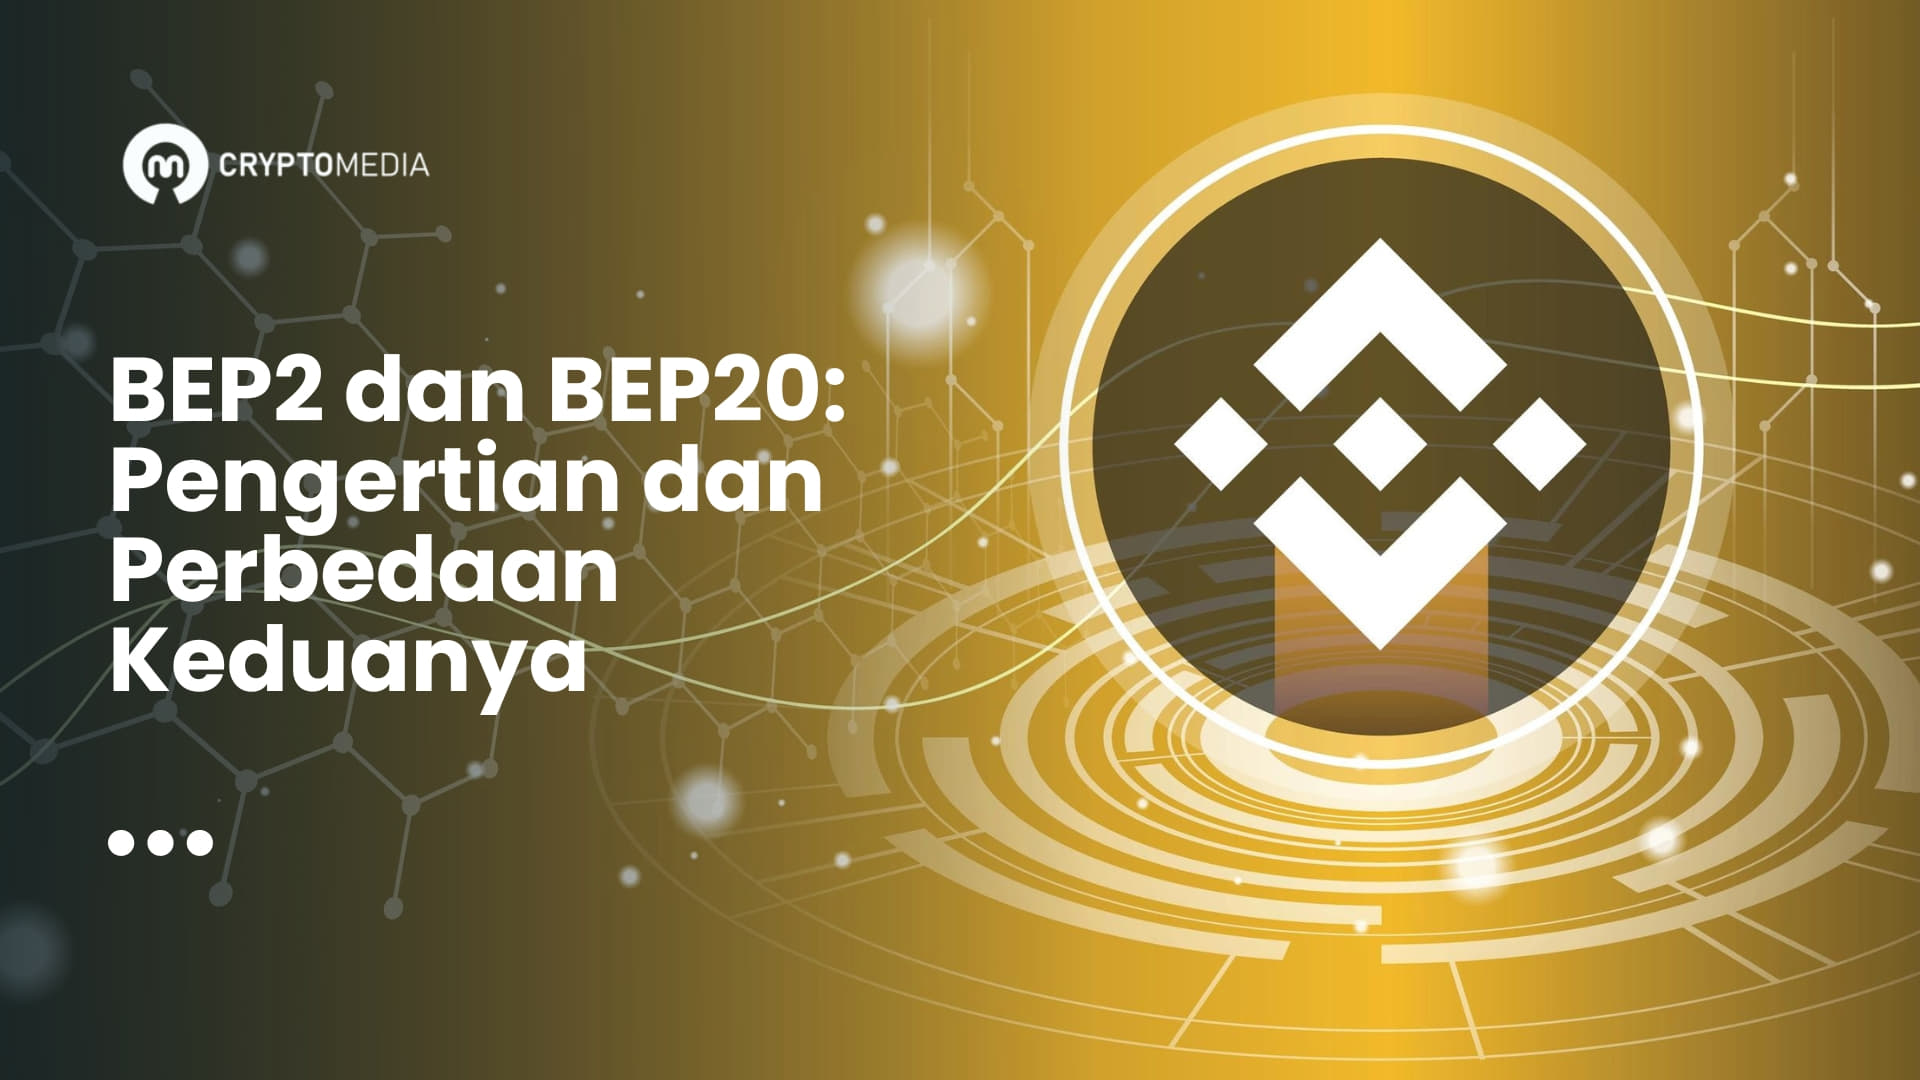 Apa itu BEP2 dan BEP20? Perbedaan antara BEP2 dan BEP20